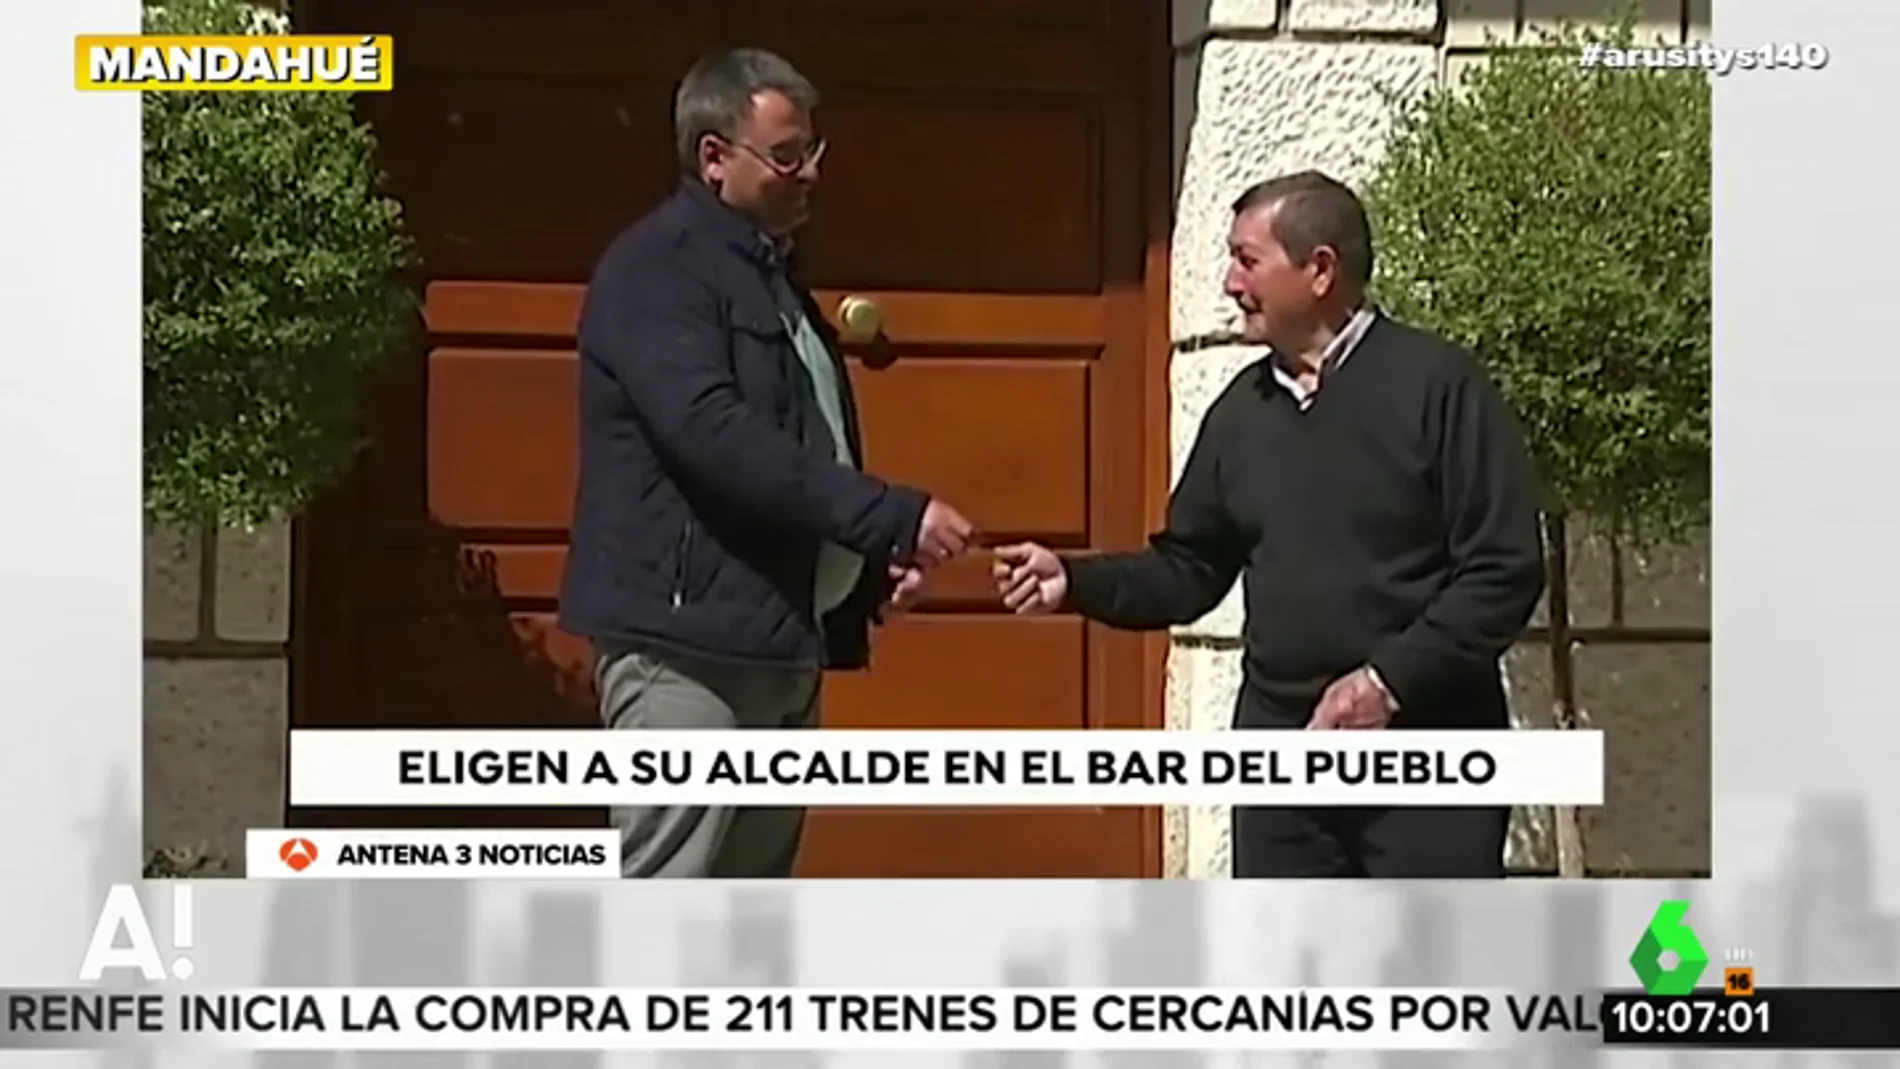 Bocos de Duero, el pueblo que vota a su alcalde en el bar para evitar que un intruso llegue al poder